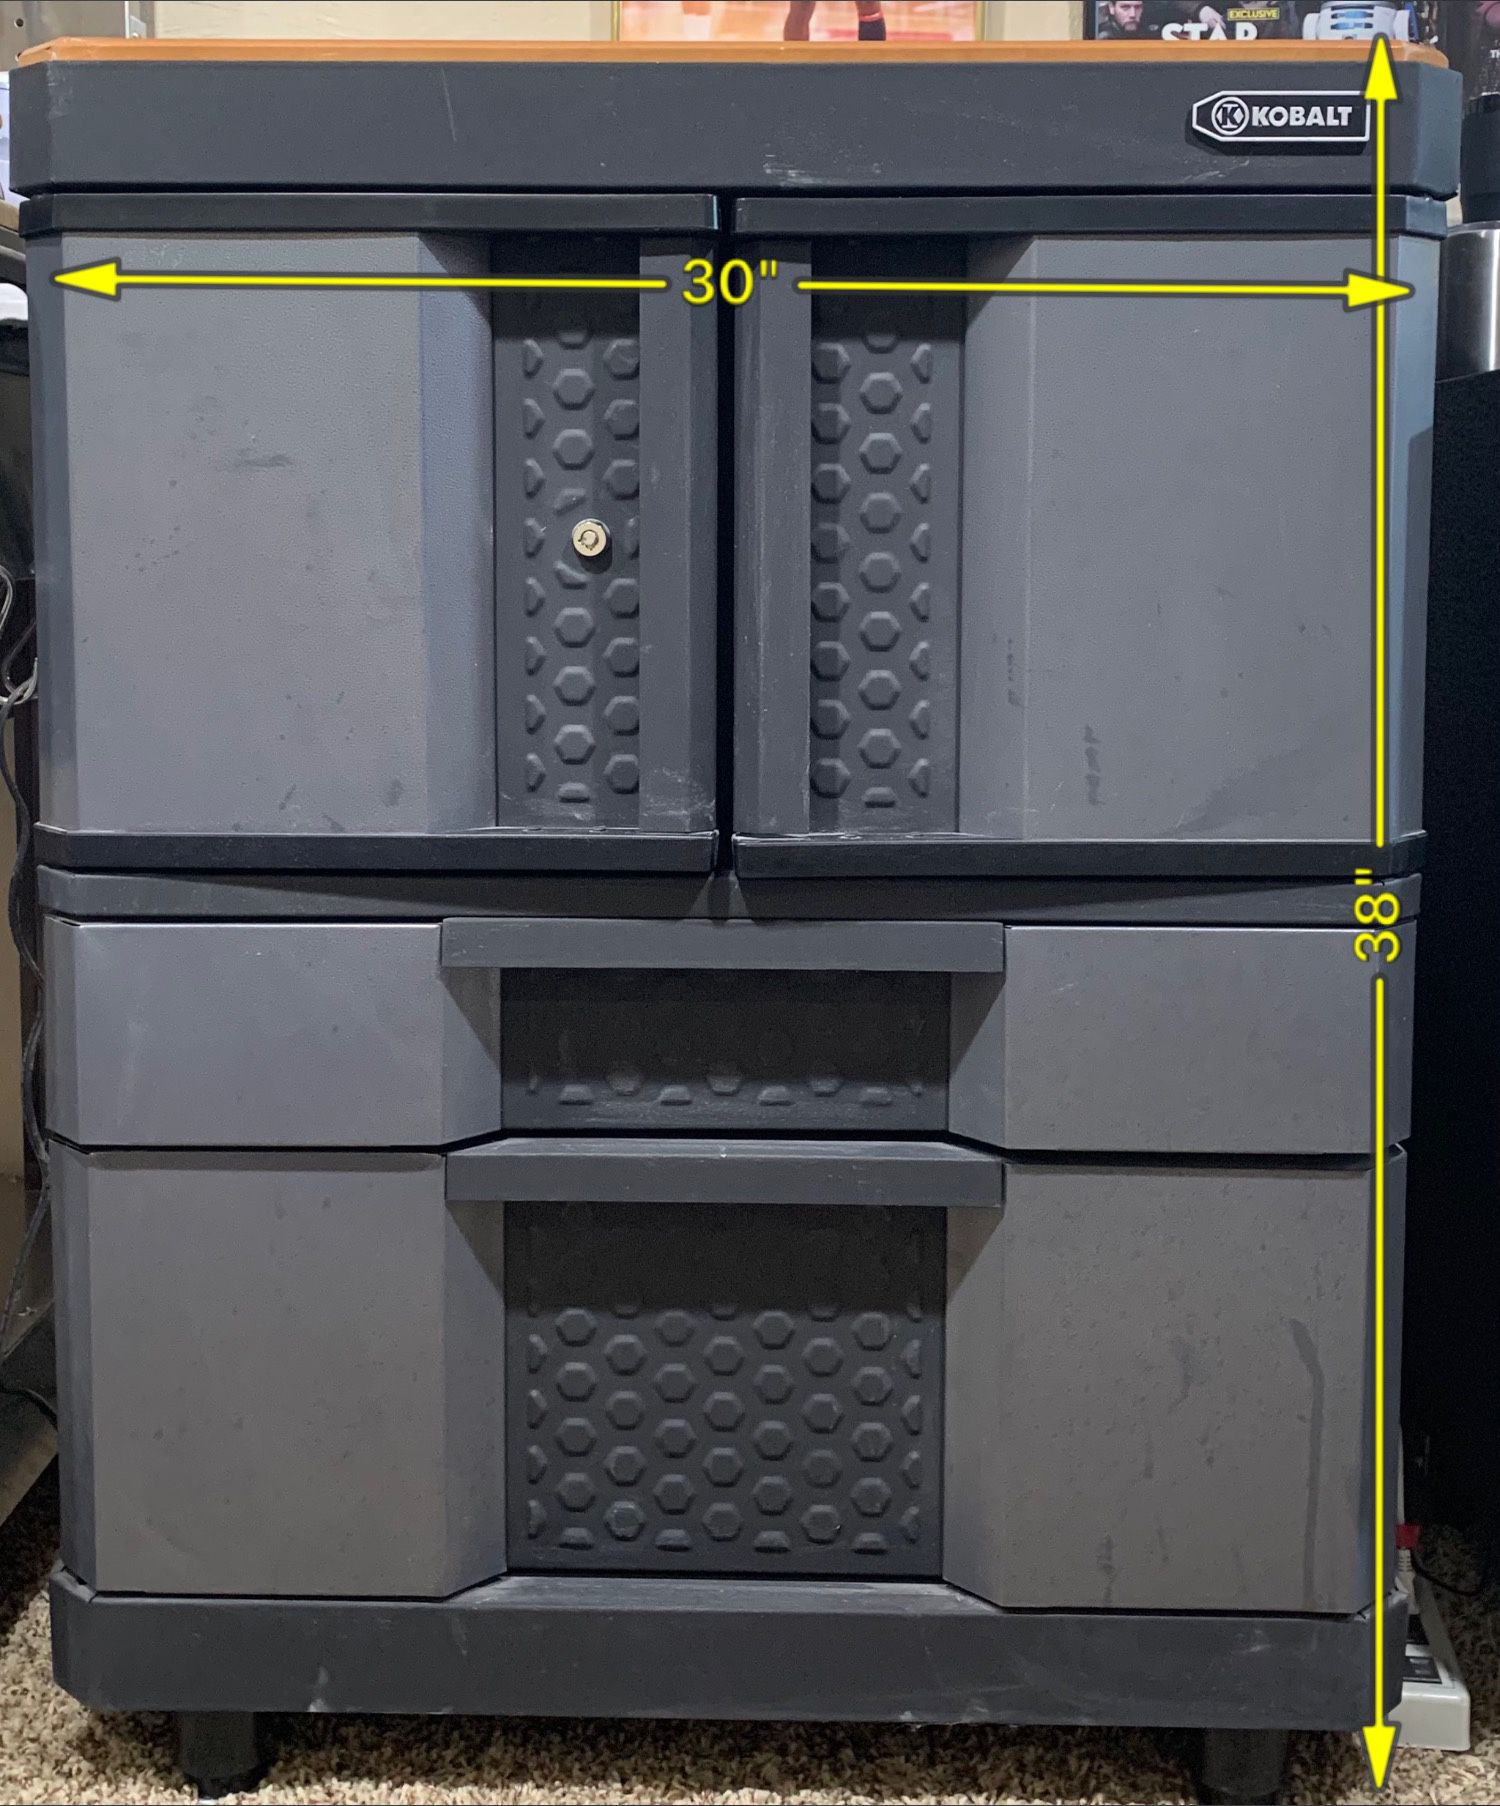 Kobalt 2 Door, 2 drawer cabinet #KB30220CMB garage or basement cabinet.